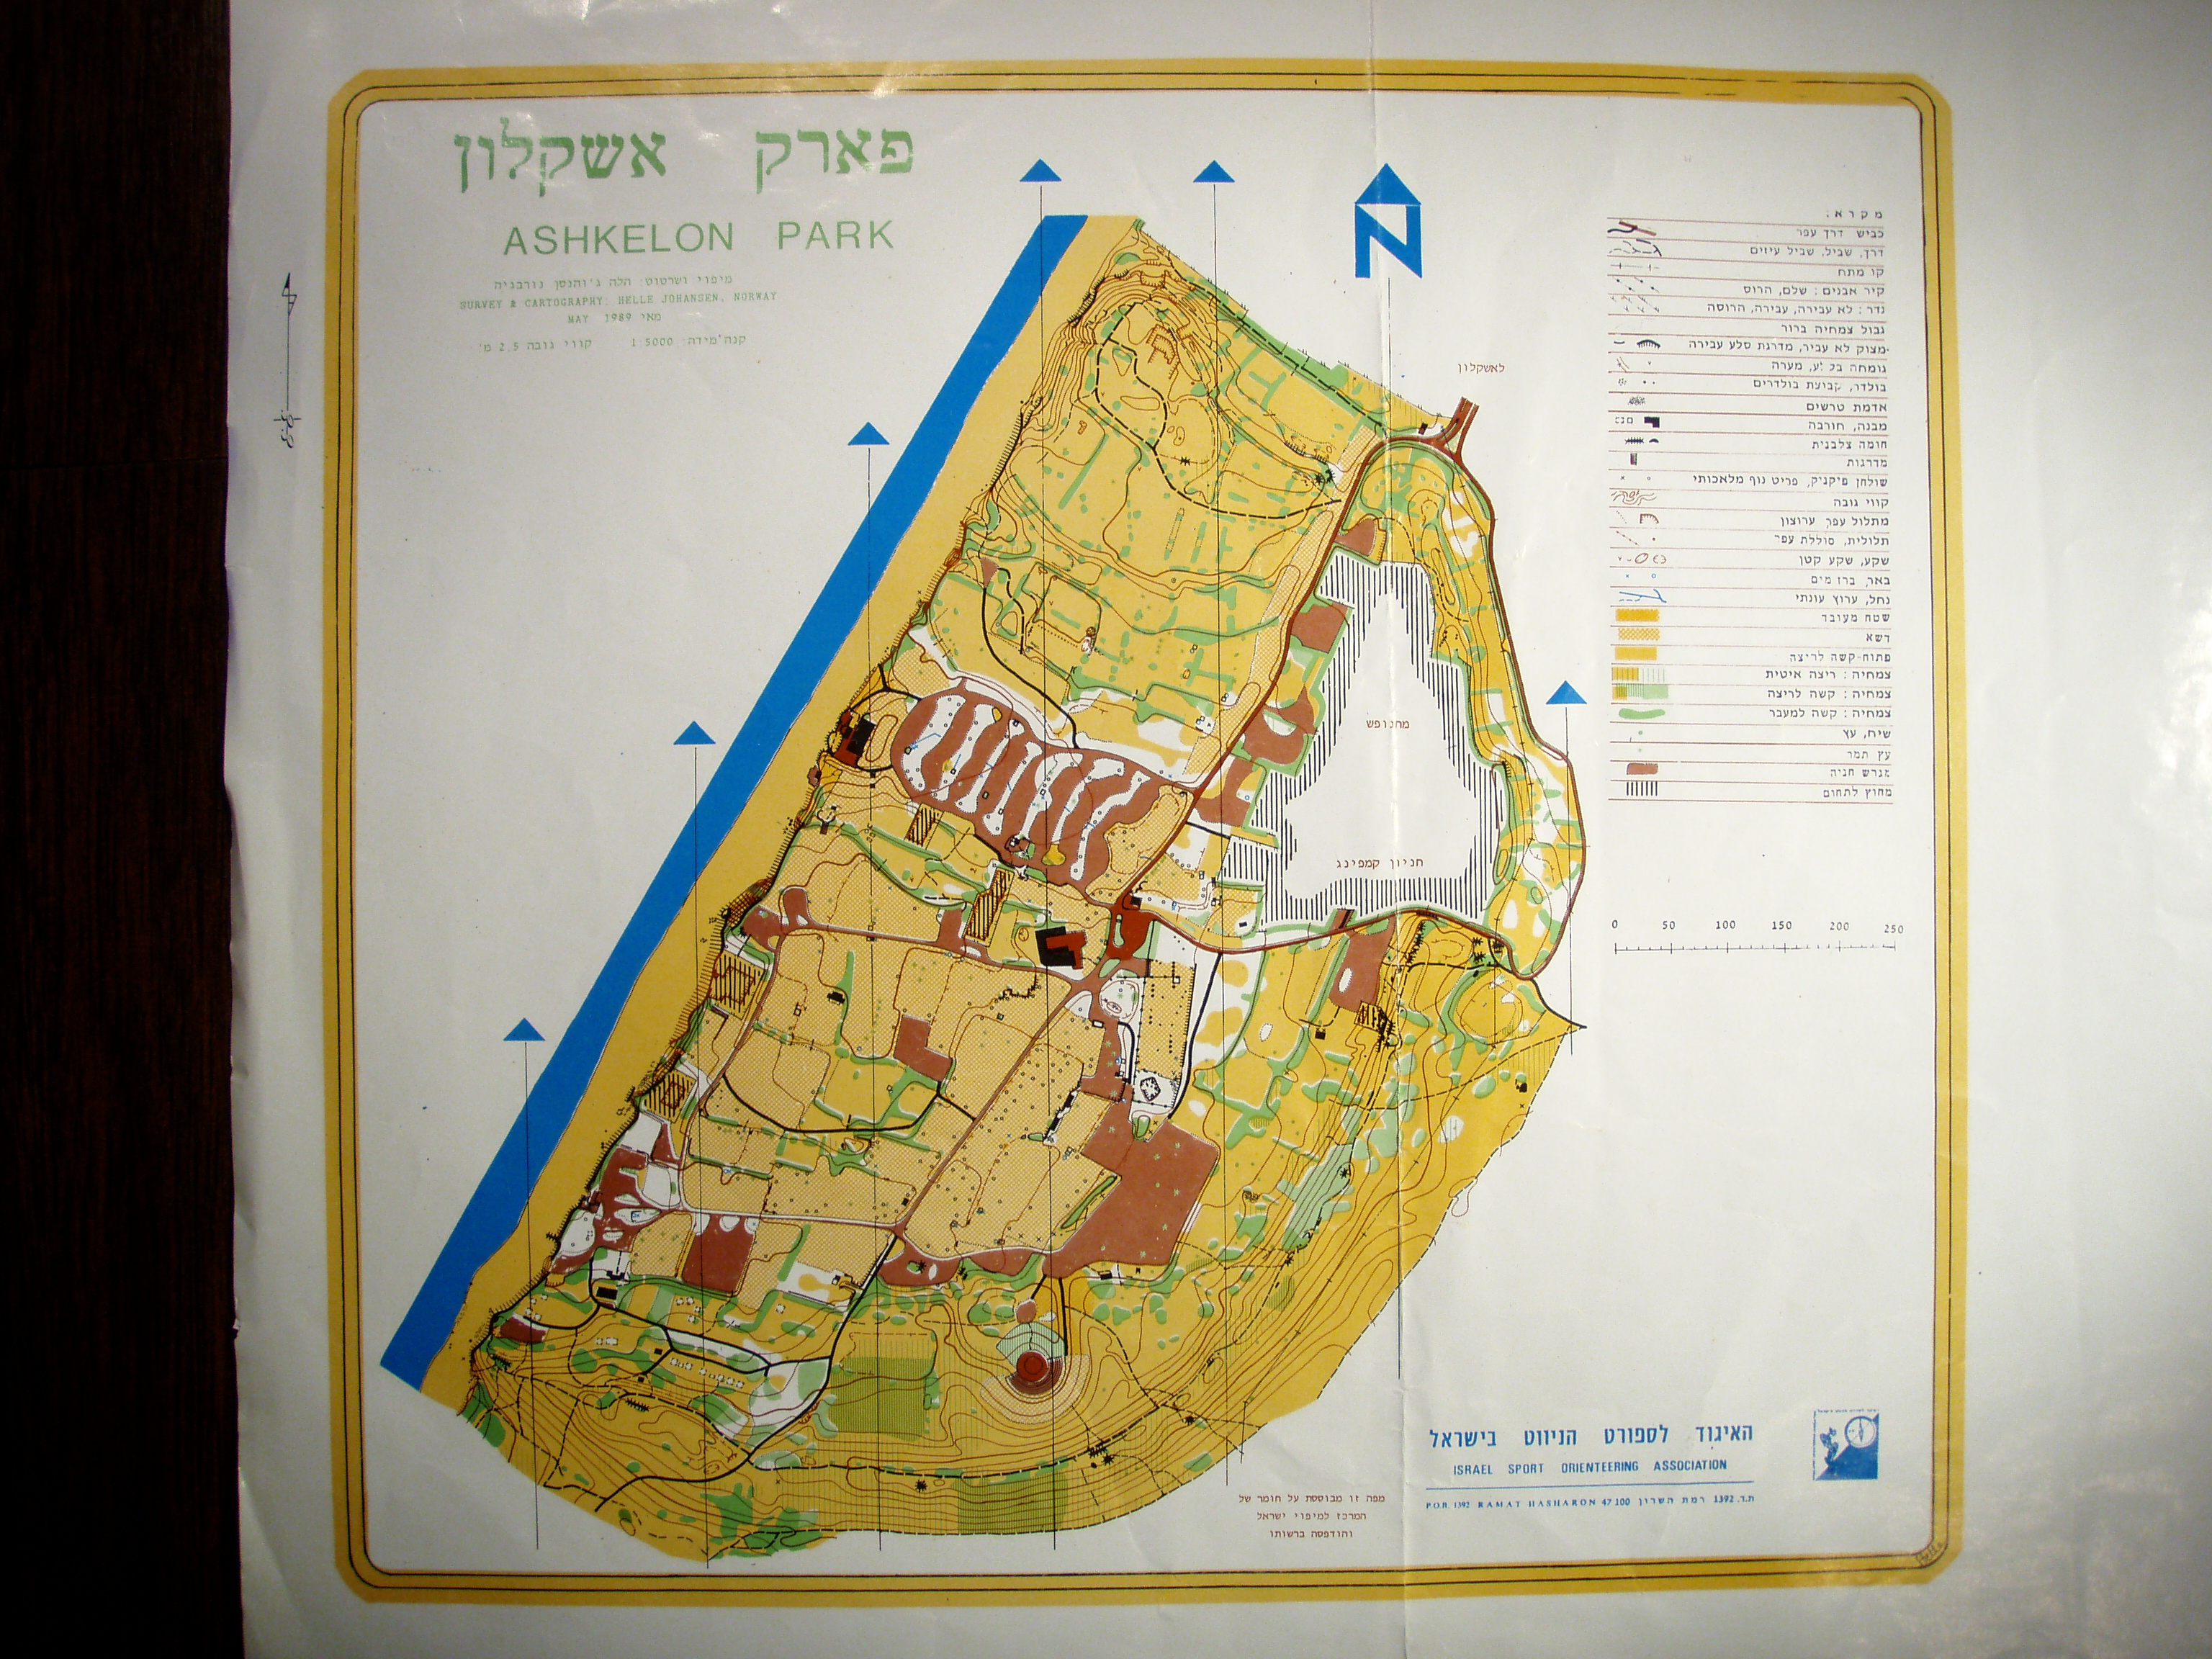 Ashkelon park (1989-05-20)